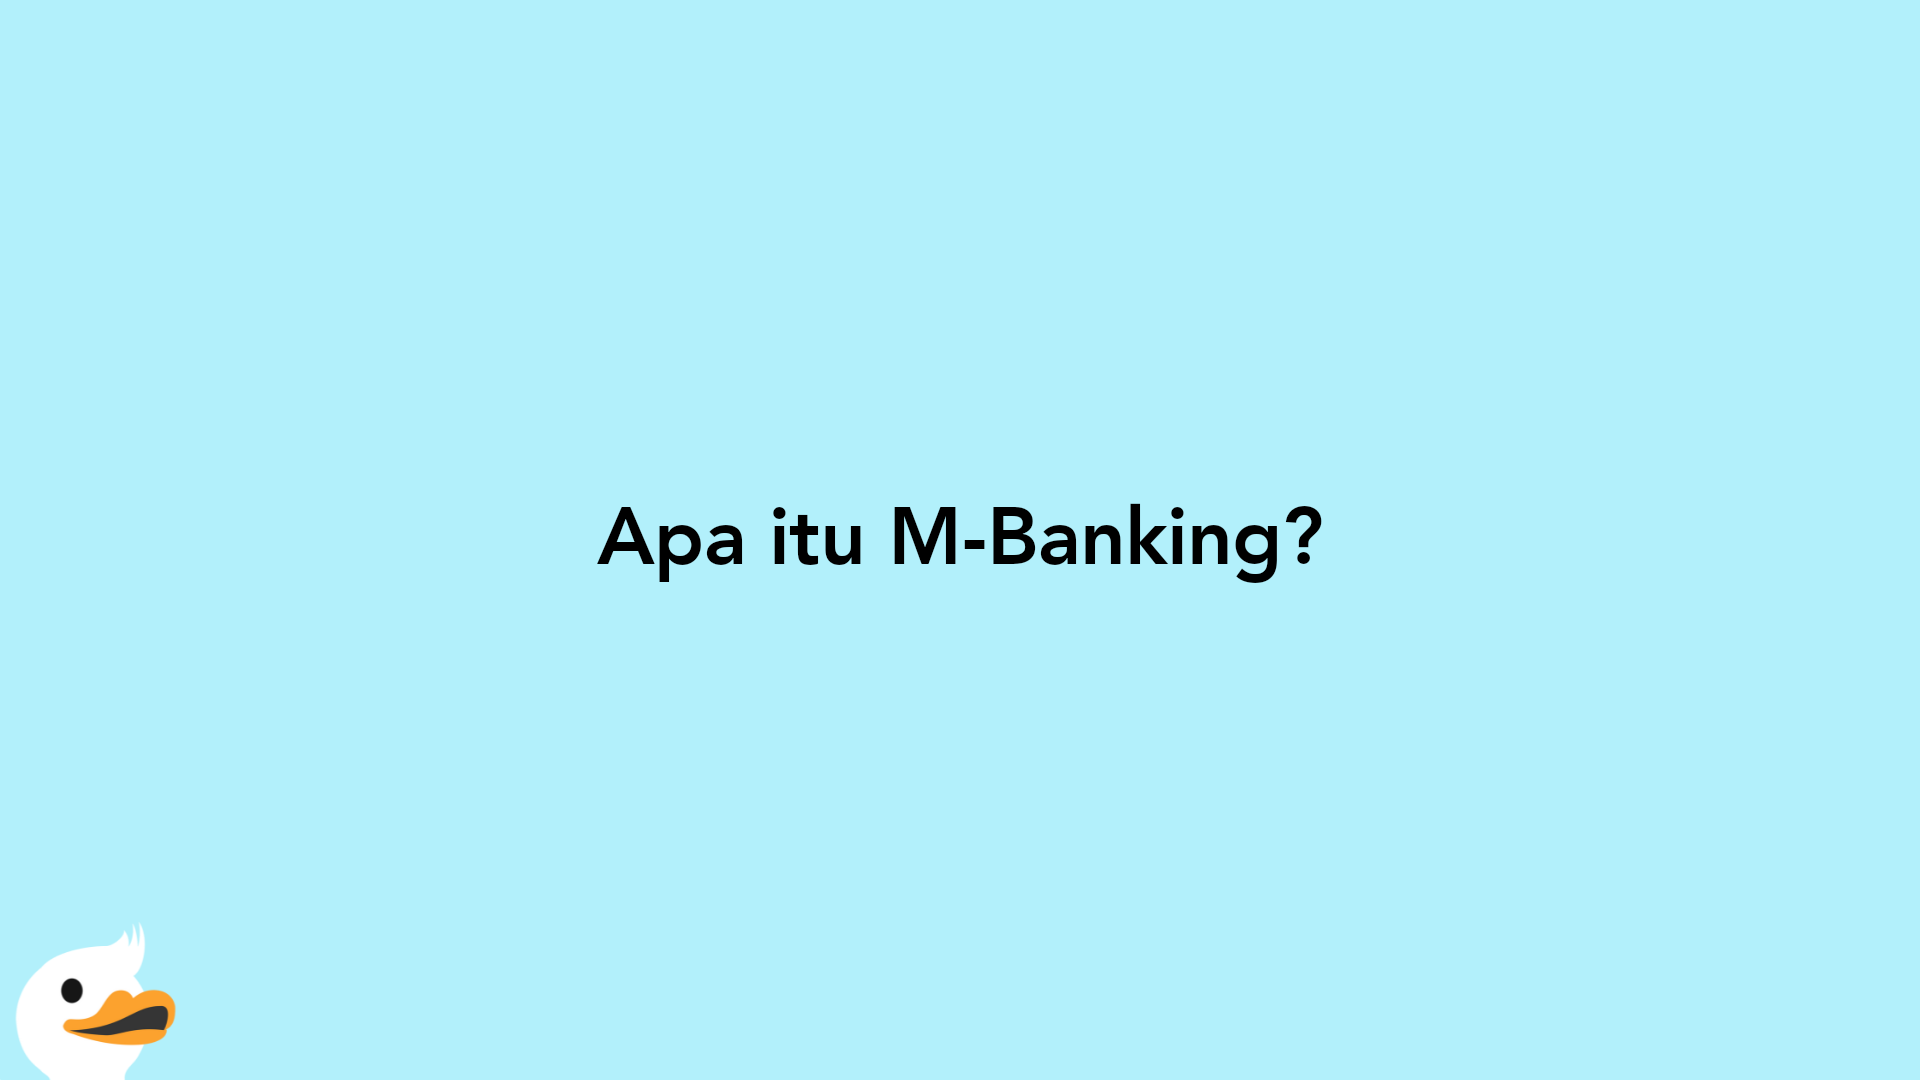 Apa itu M-Banking?